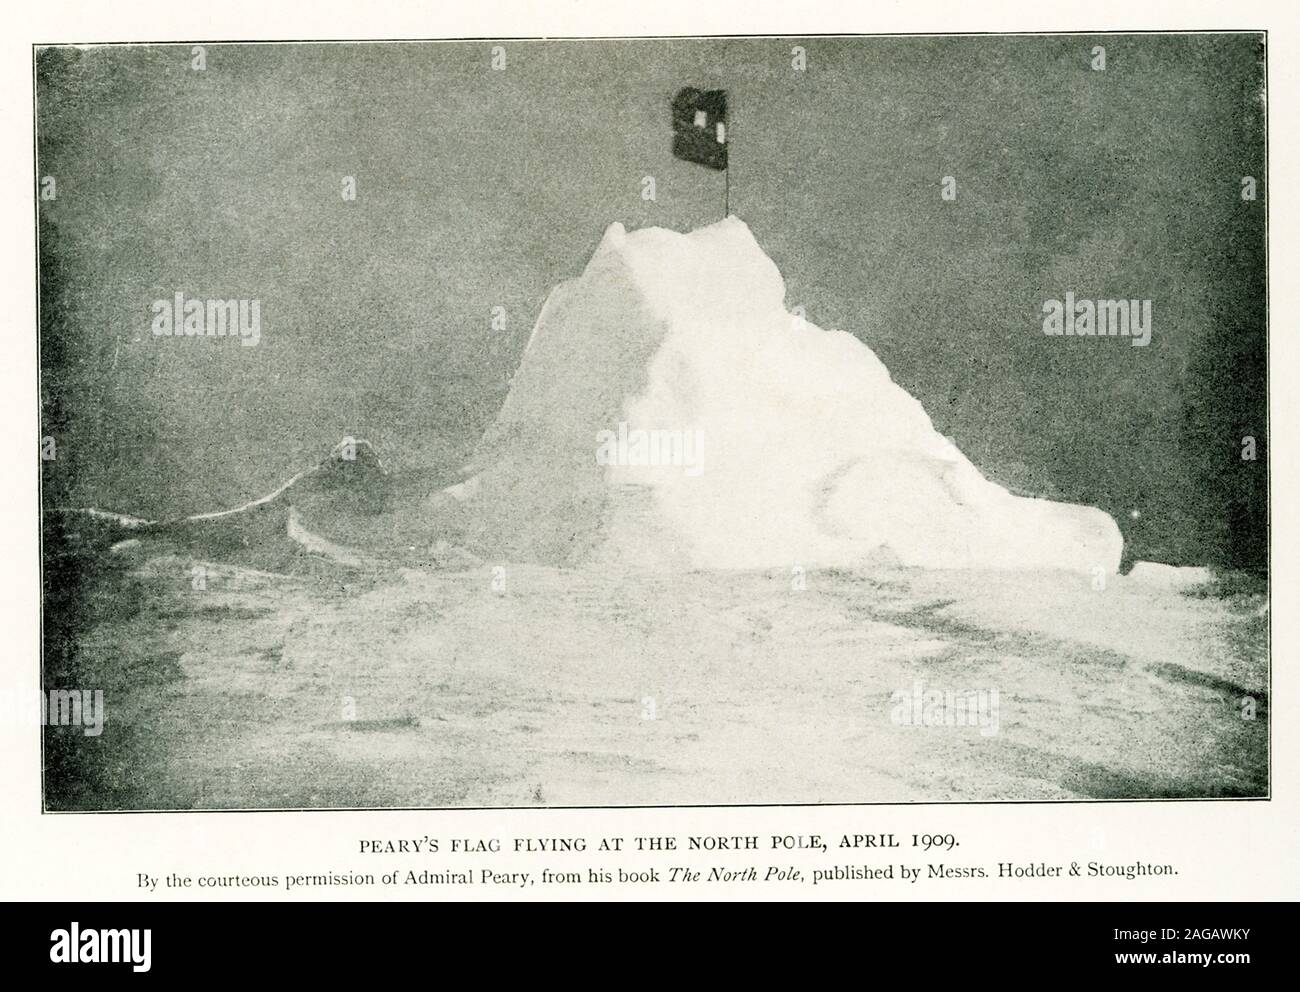 Dieses Foto zeigt Peary's Fahne am Nordpol, April 1909. Durch die freundliche Genehmigung von Admiral Peary, aus seinem Buch der Nordpol, veröffentlicht durch die Herren Hodder & Stoughton. Peary war ein US-amerikanischer Explorer und United States Navy Offizier, der mehrere Expeditionen in die Arktis im späten 19. und frühen 20. Jahrhundert. Er ist am besten für die Inanspruchnahme der geographische Nordpol mit seiner Expedition am 6. April 1909 erreicht zu haben. Stockfoto